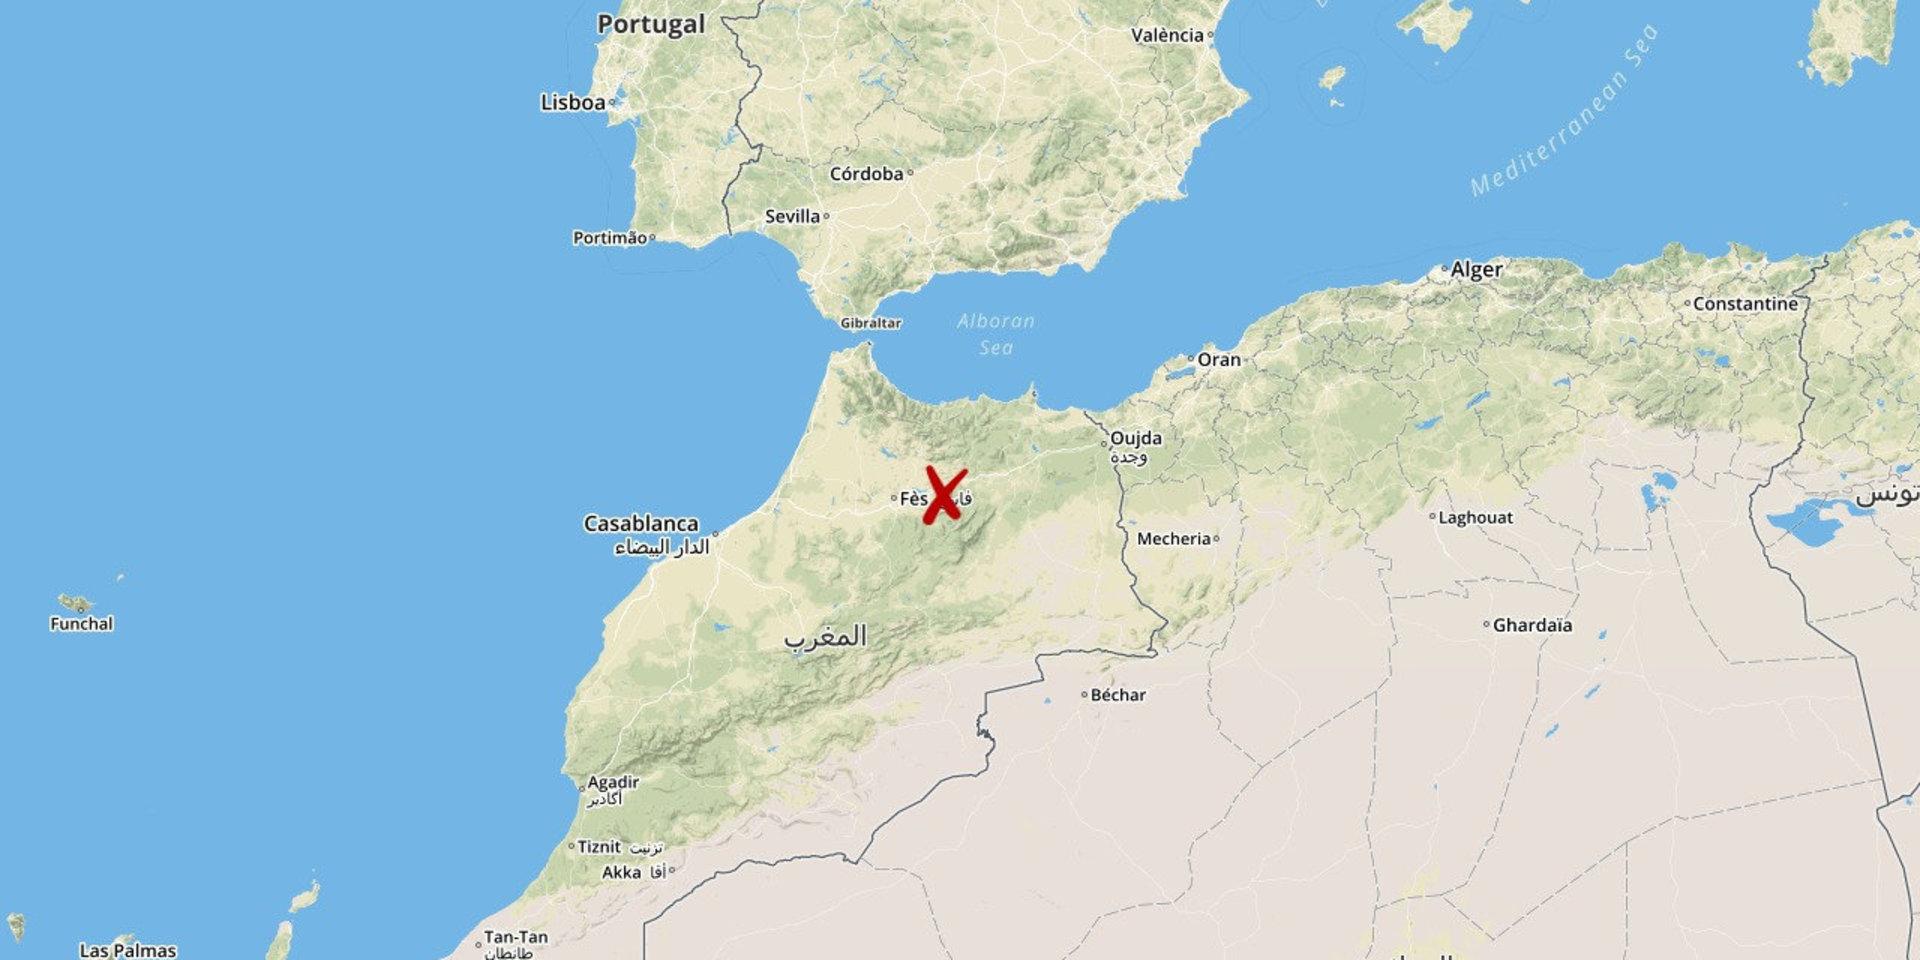 Minst 17 människor omkom i söndags i en bussolycka i norra Marocko, meddelar landets hälsodepartement.